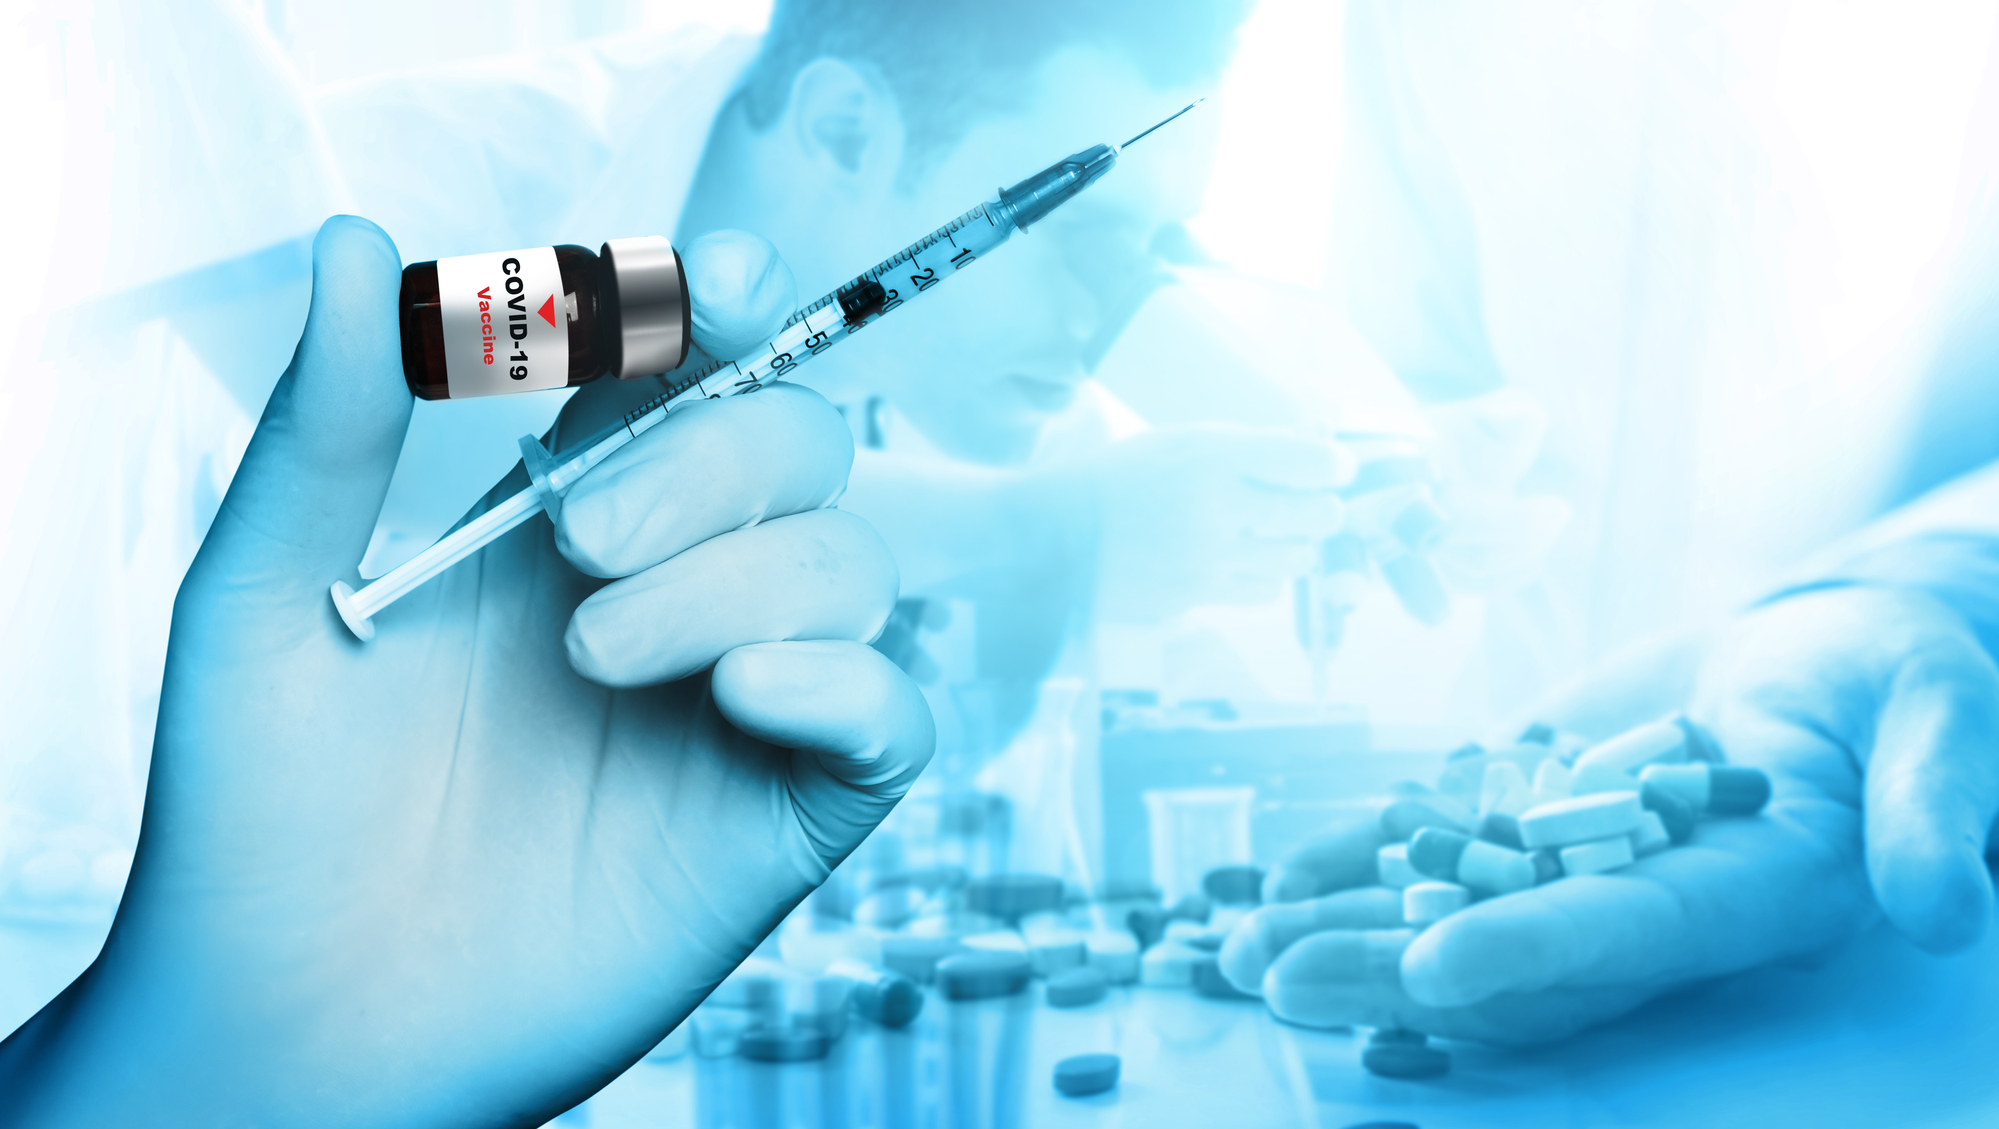 Noua generație de vaccinuri anti-Covid va include spray-uri nazale sau pastile. 129 sunt în curs de examinare